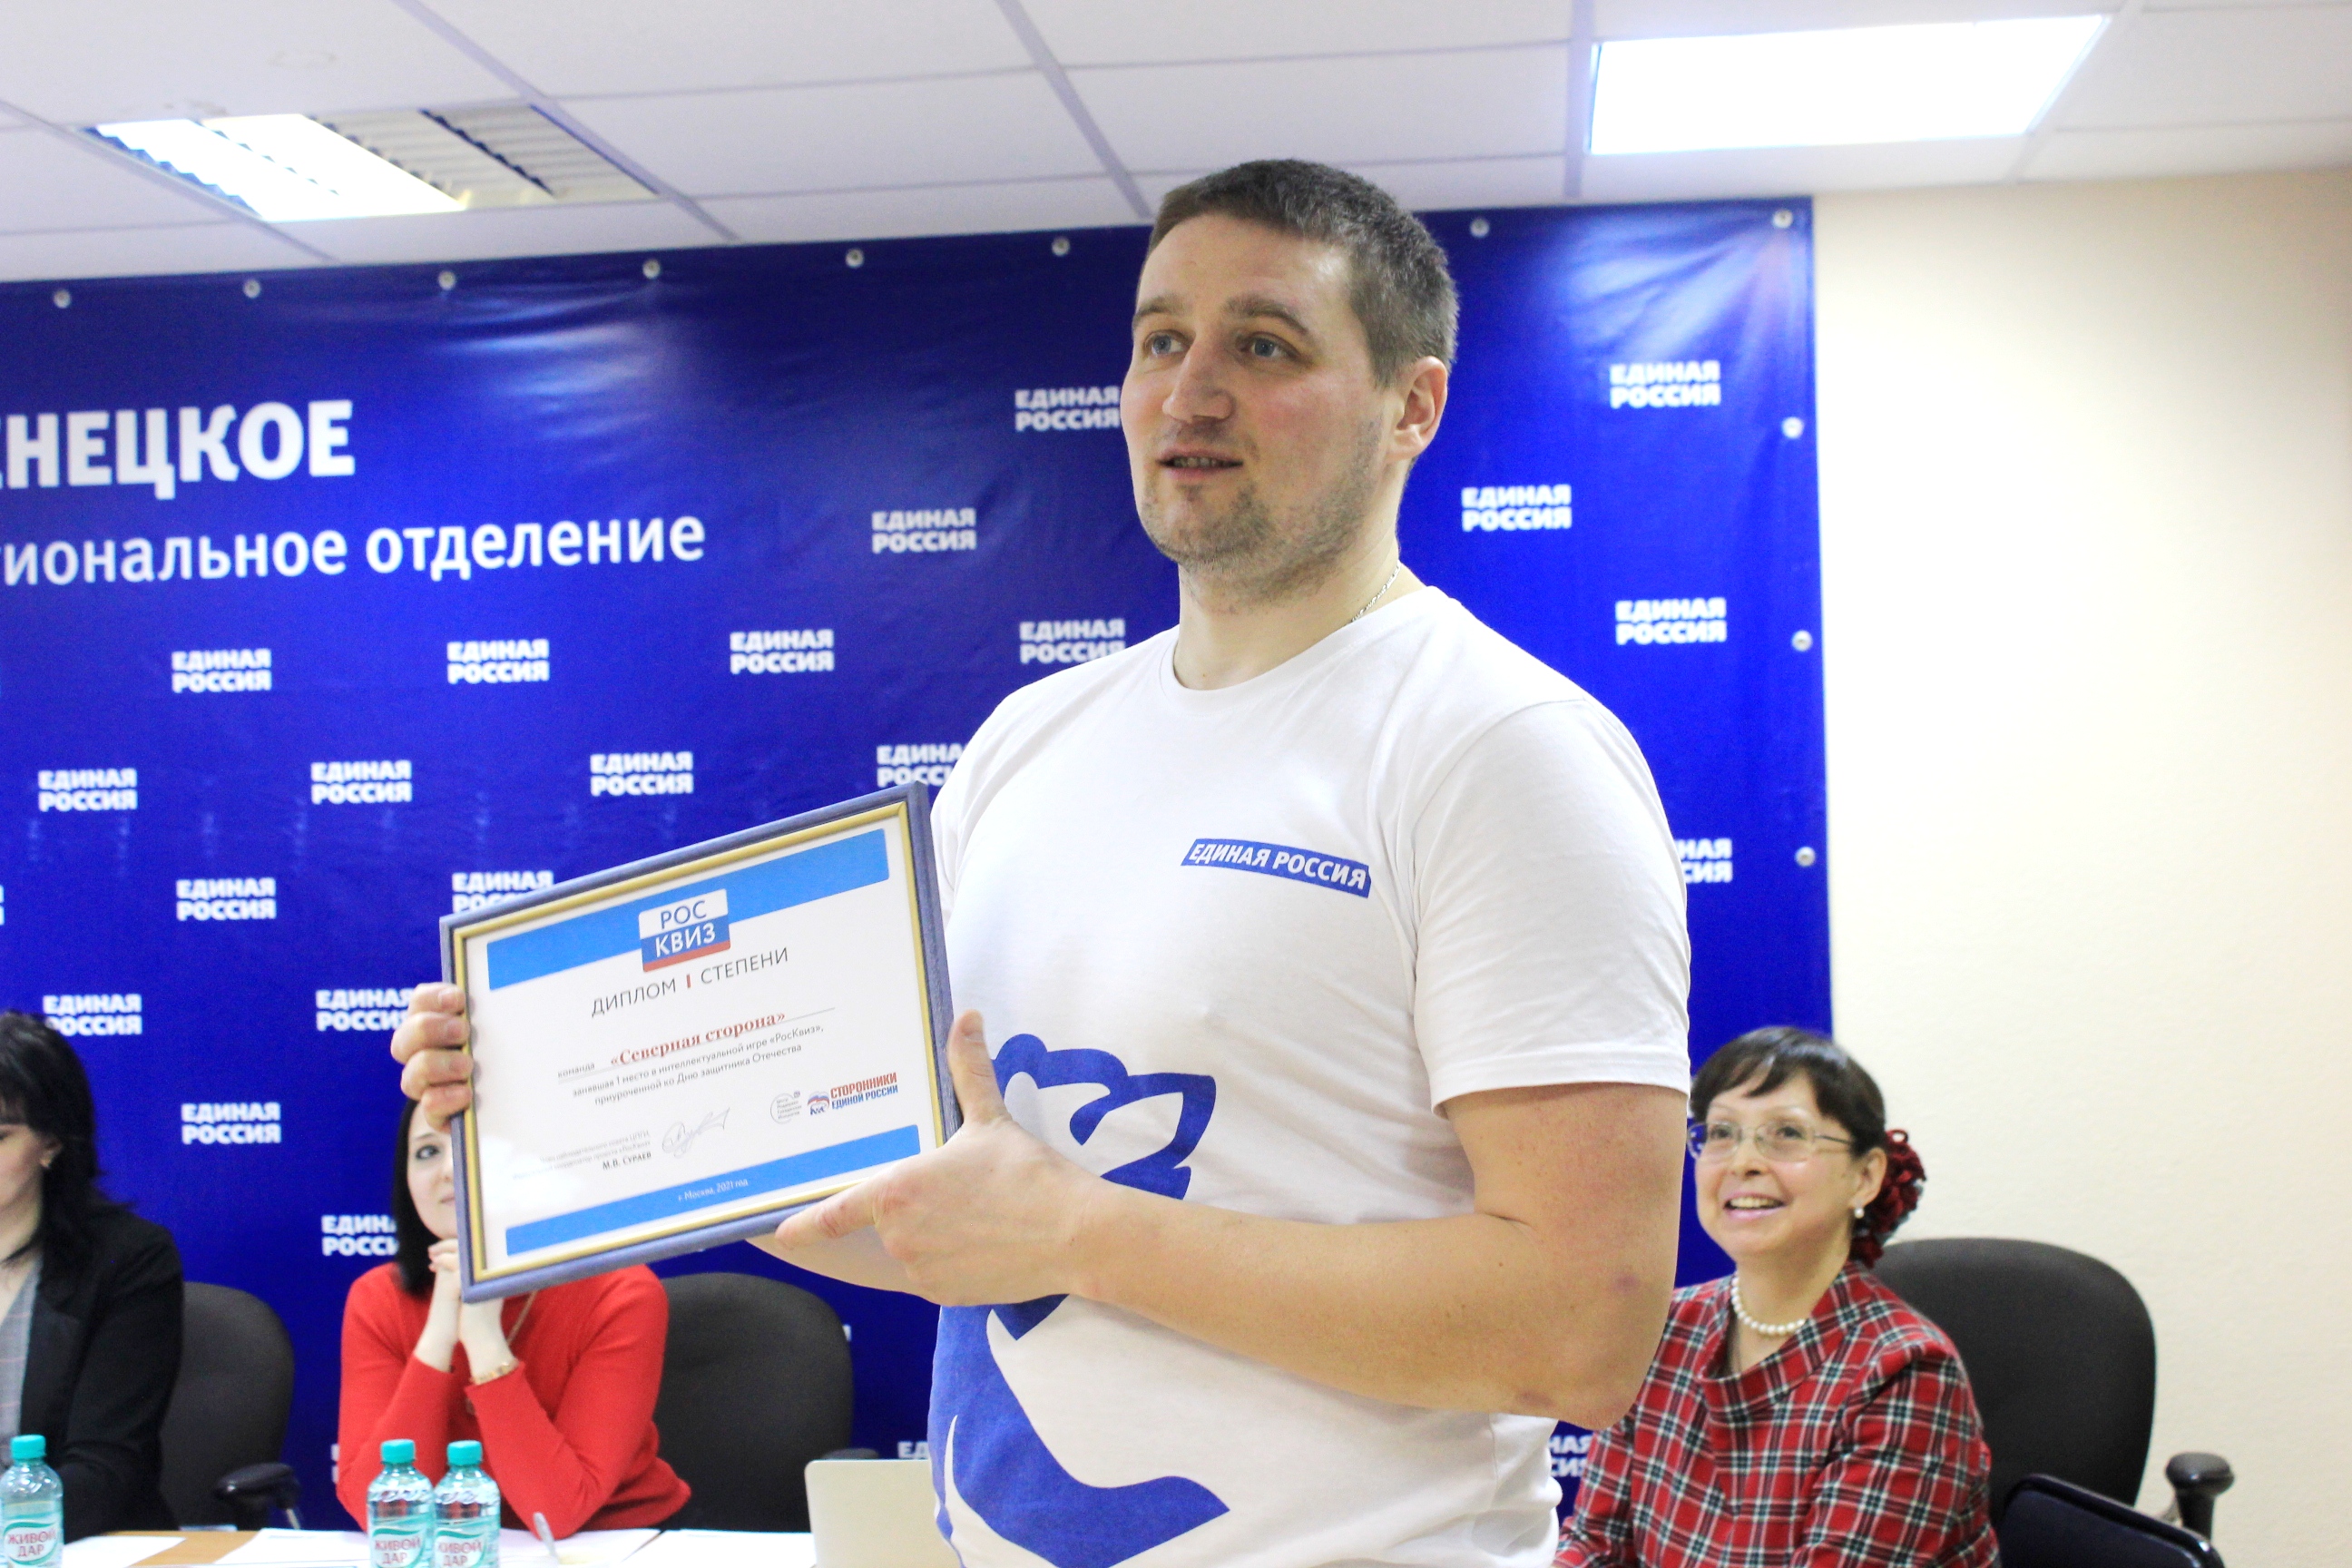 Капитану команды сторонников Ивану Егорову вручили диплом за победу в прошлом турнире